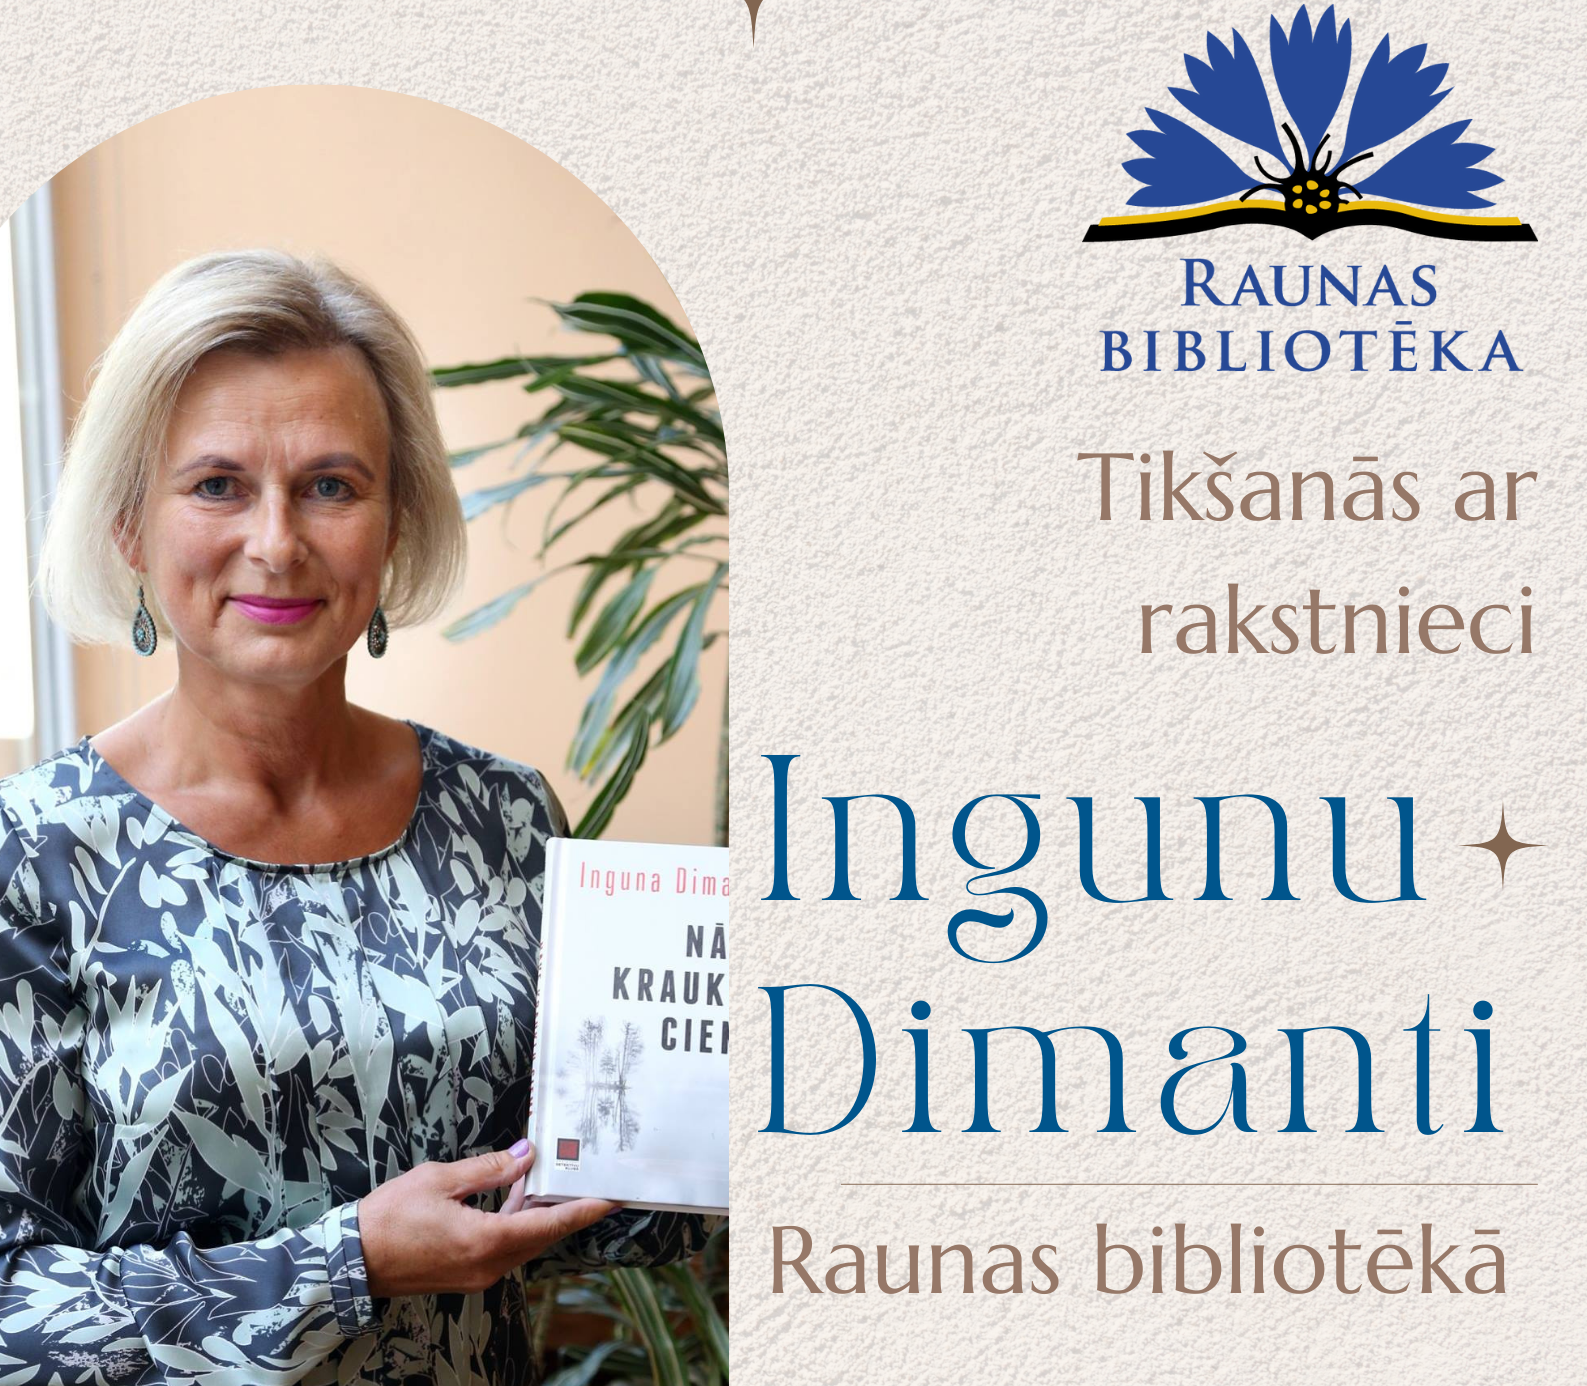 Raunas bibliotēkā viesosies detektīvromānu autore Inguna Dimante